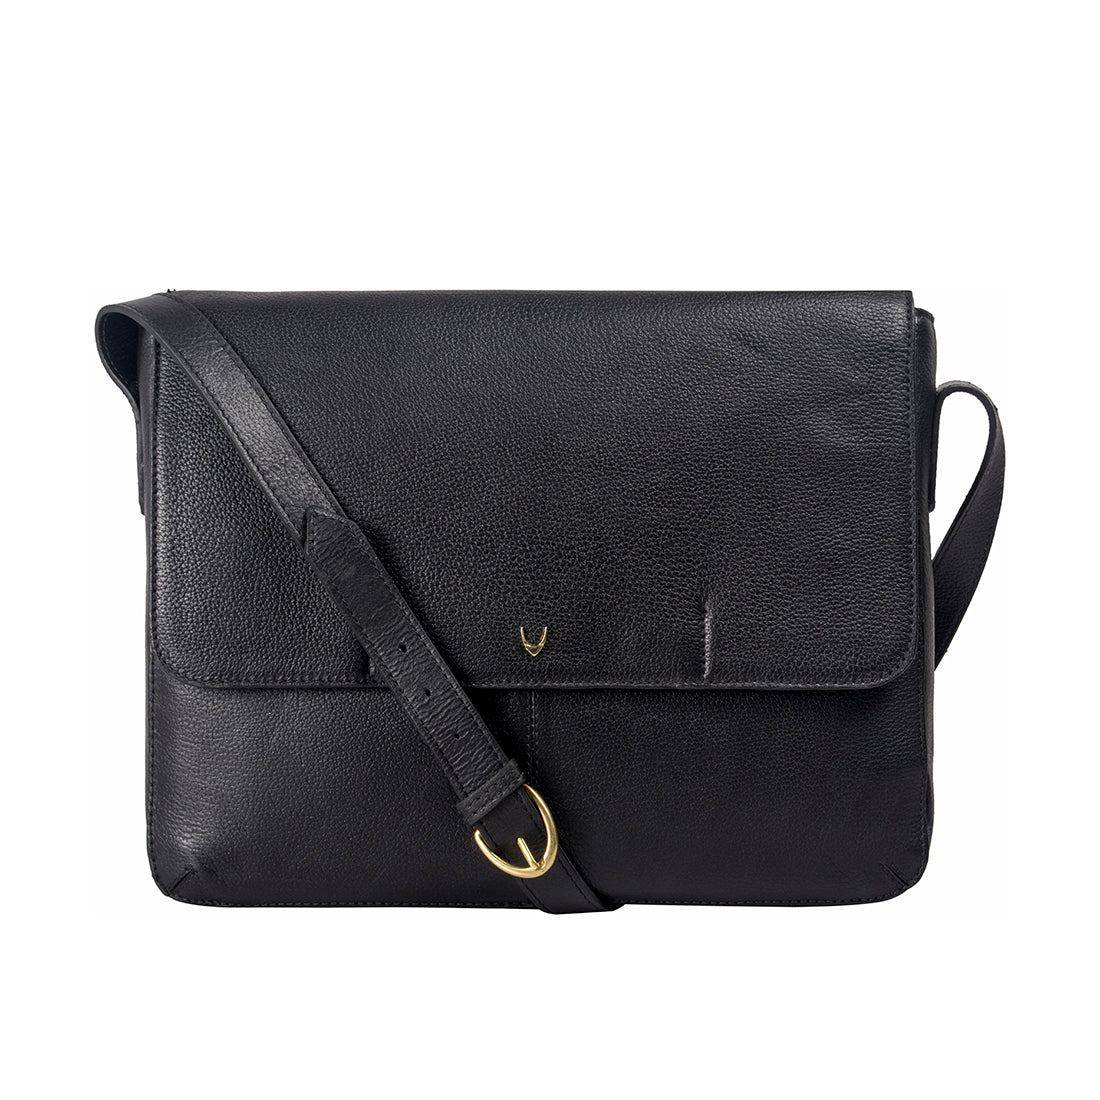 Buy Black Ee Salvodor 01 Messenger Bag Online - Hidesign